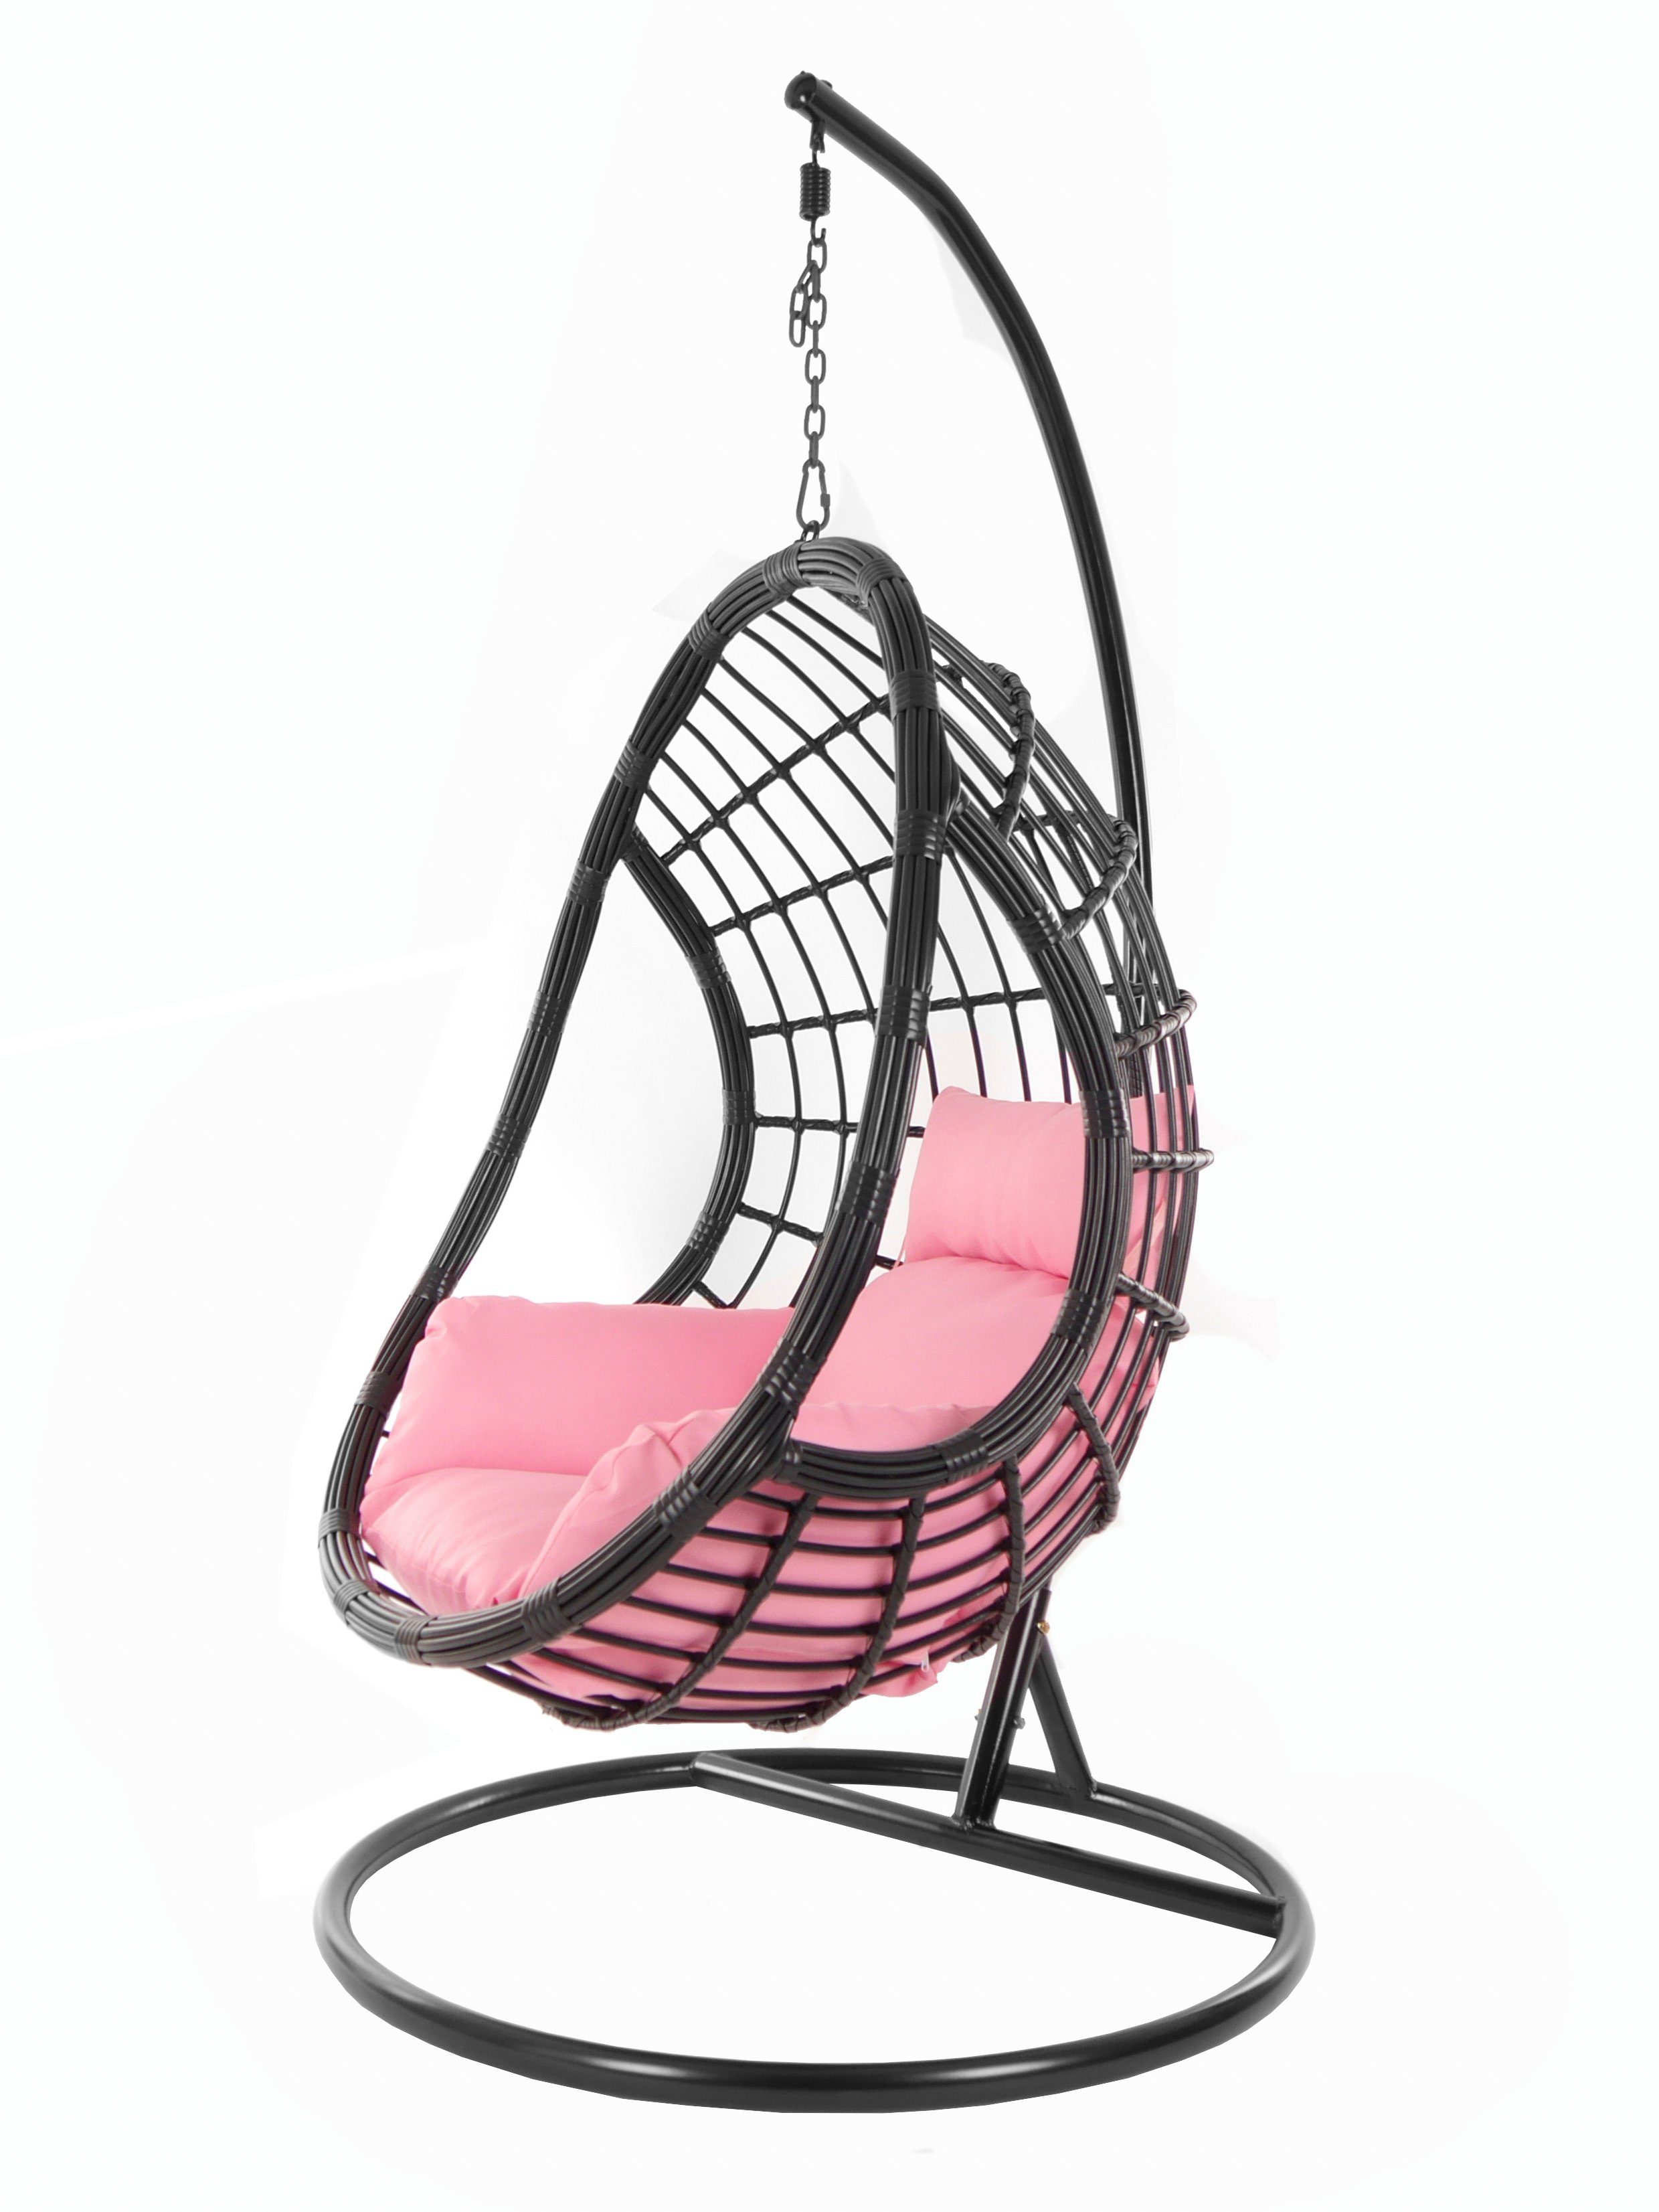 KIDEO Hängesessel Kissen, PALMANOVA Chair, Schwebesessel, Nest-Kissen Swing (3002 Hängesessel rosa lemonade) black, Gestell und mit